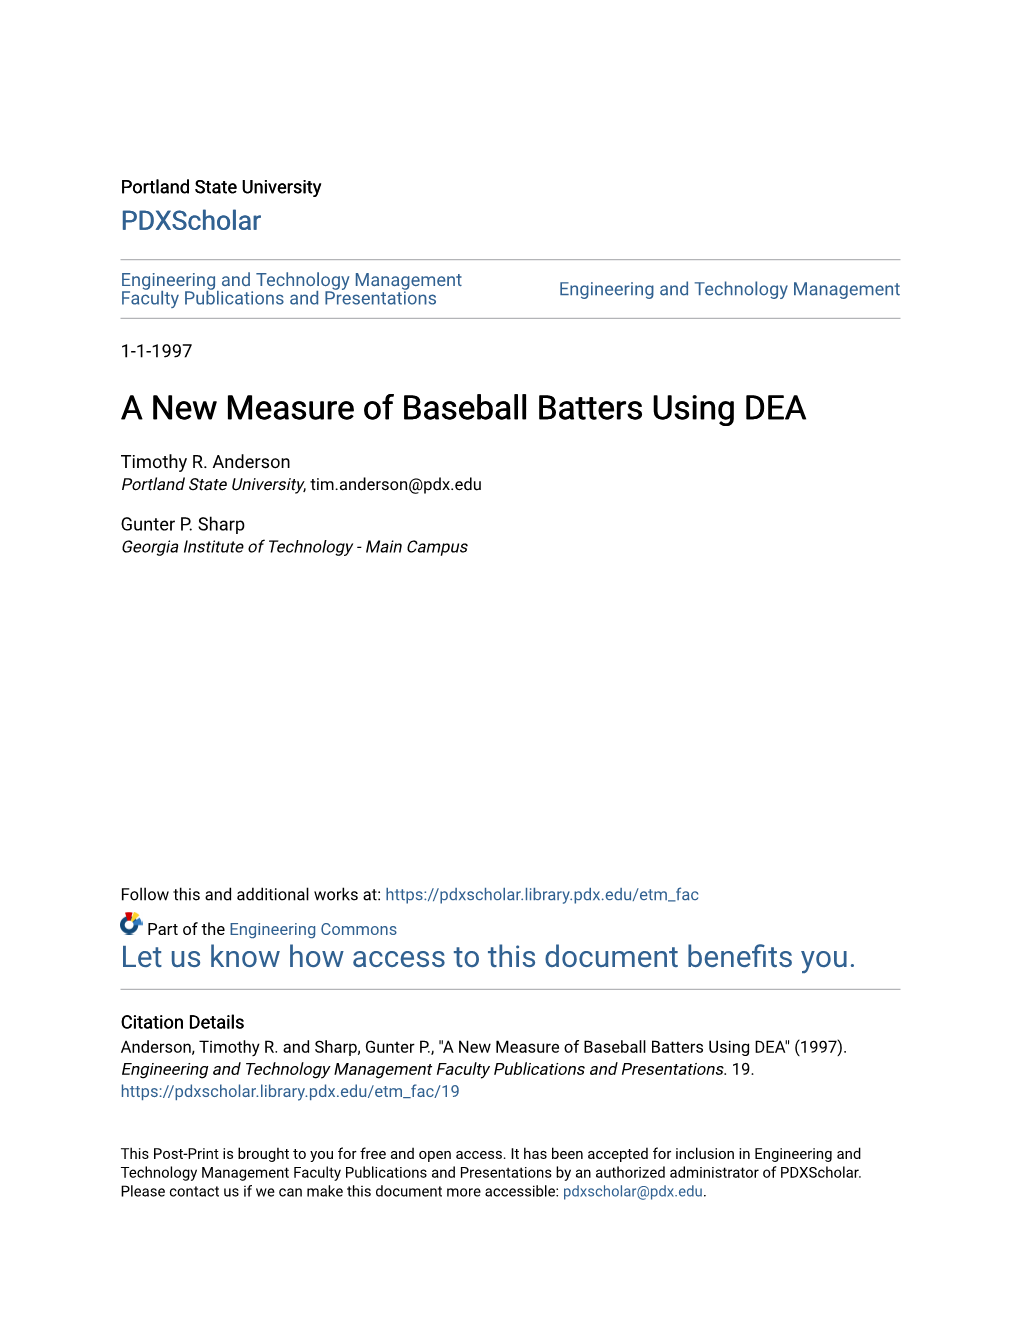 A New Measure of Baseball Batters Using DEA